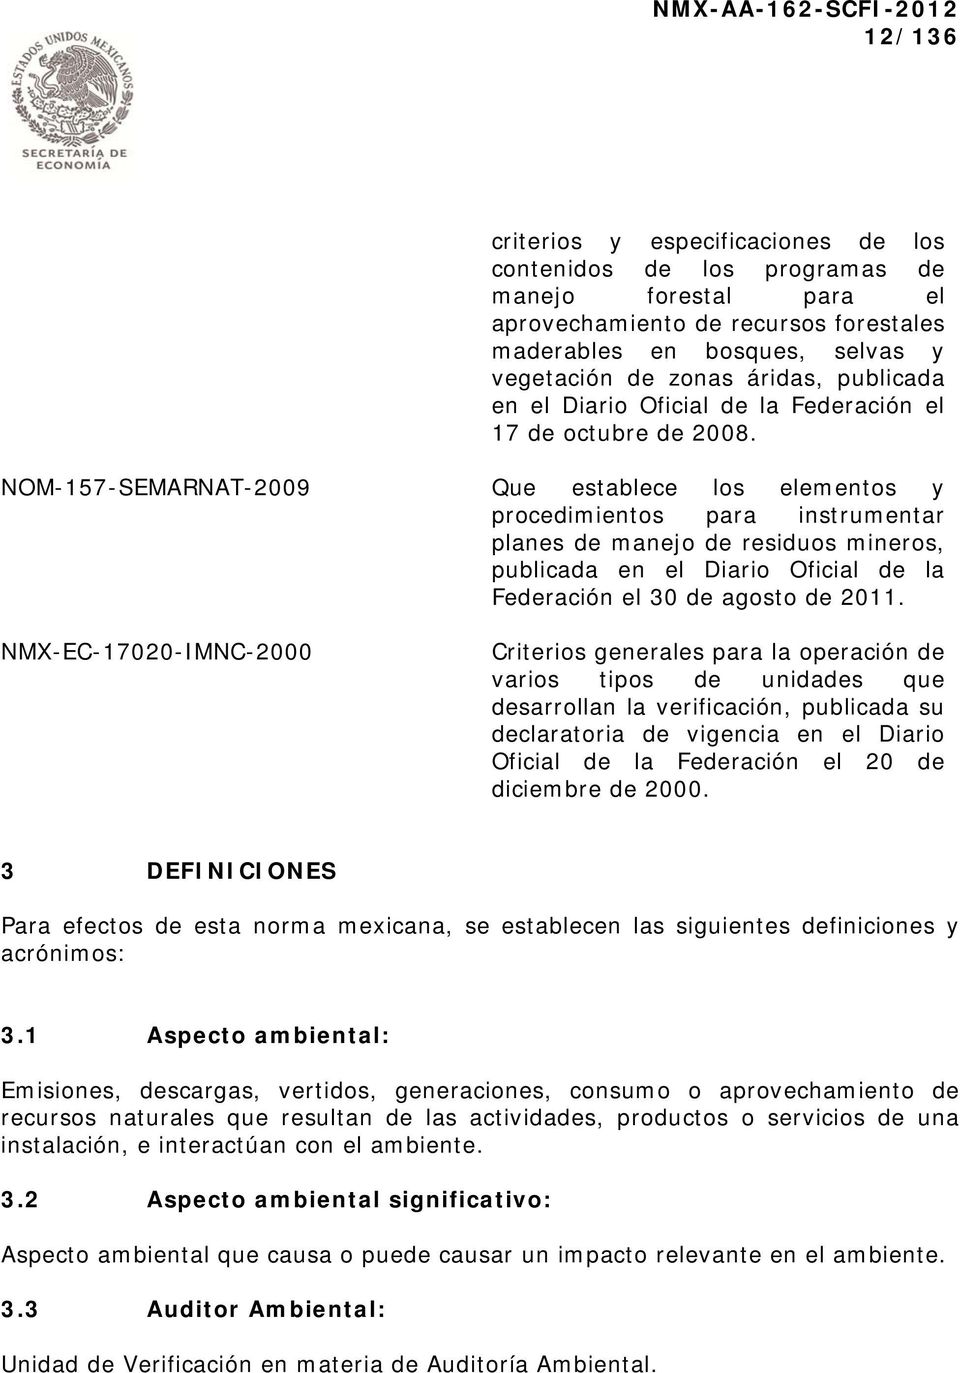 NOM-157-SEMARNAT-2009 Que establece los elementos y procedimientos para instrumentar planes de manejo de residuos mineros, publicada en el Diario Oficial de la Federación el 30 de agosto de 2011.